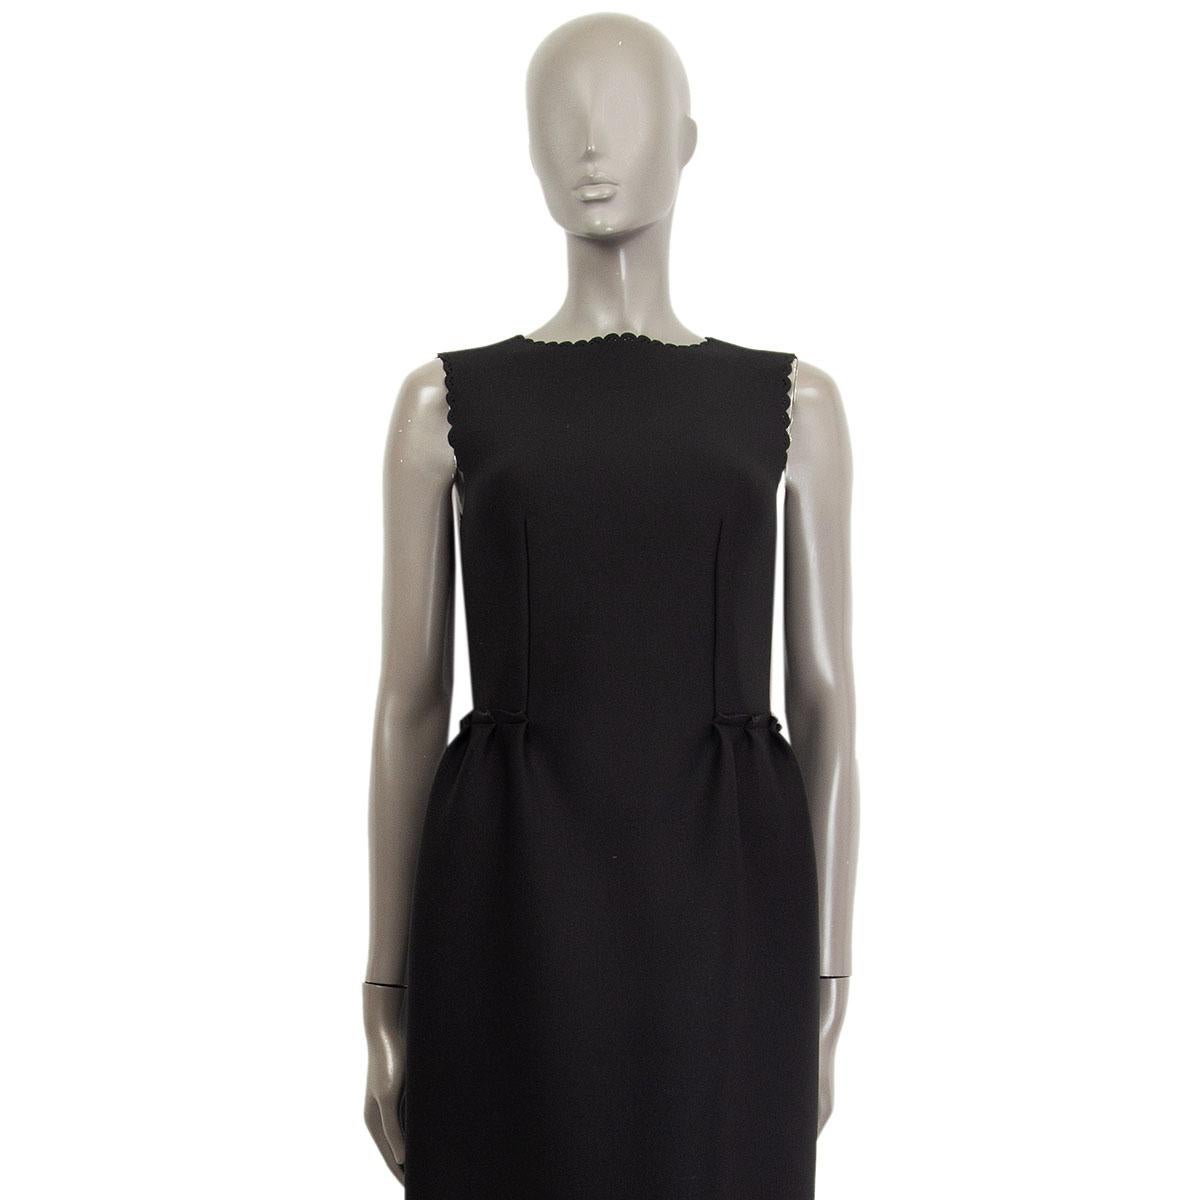 robe fourreau Lanvin 100% authentique en polyamide (91%) et élasthanne (9%) noir avec un bord festonné et une taille froncée détaillée. Matériau léger en néoprène. Se ferme avec une fermeture éclair dissimulée dans le dos. A été porté et est en